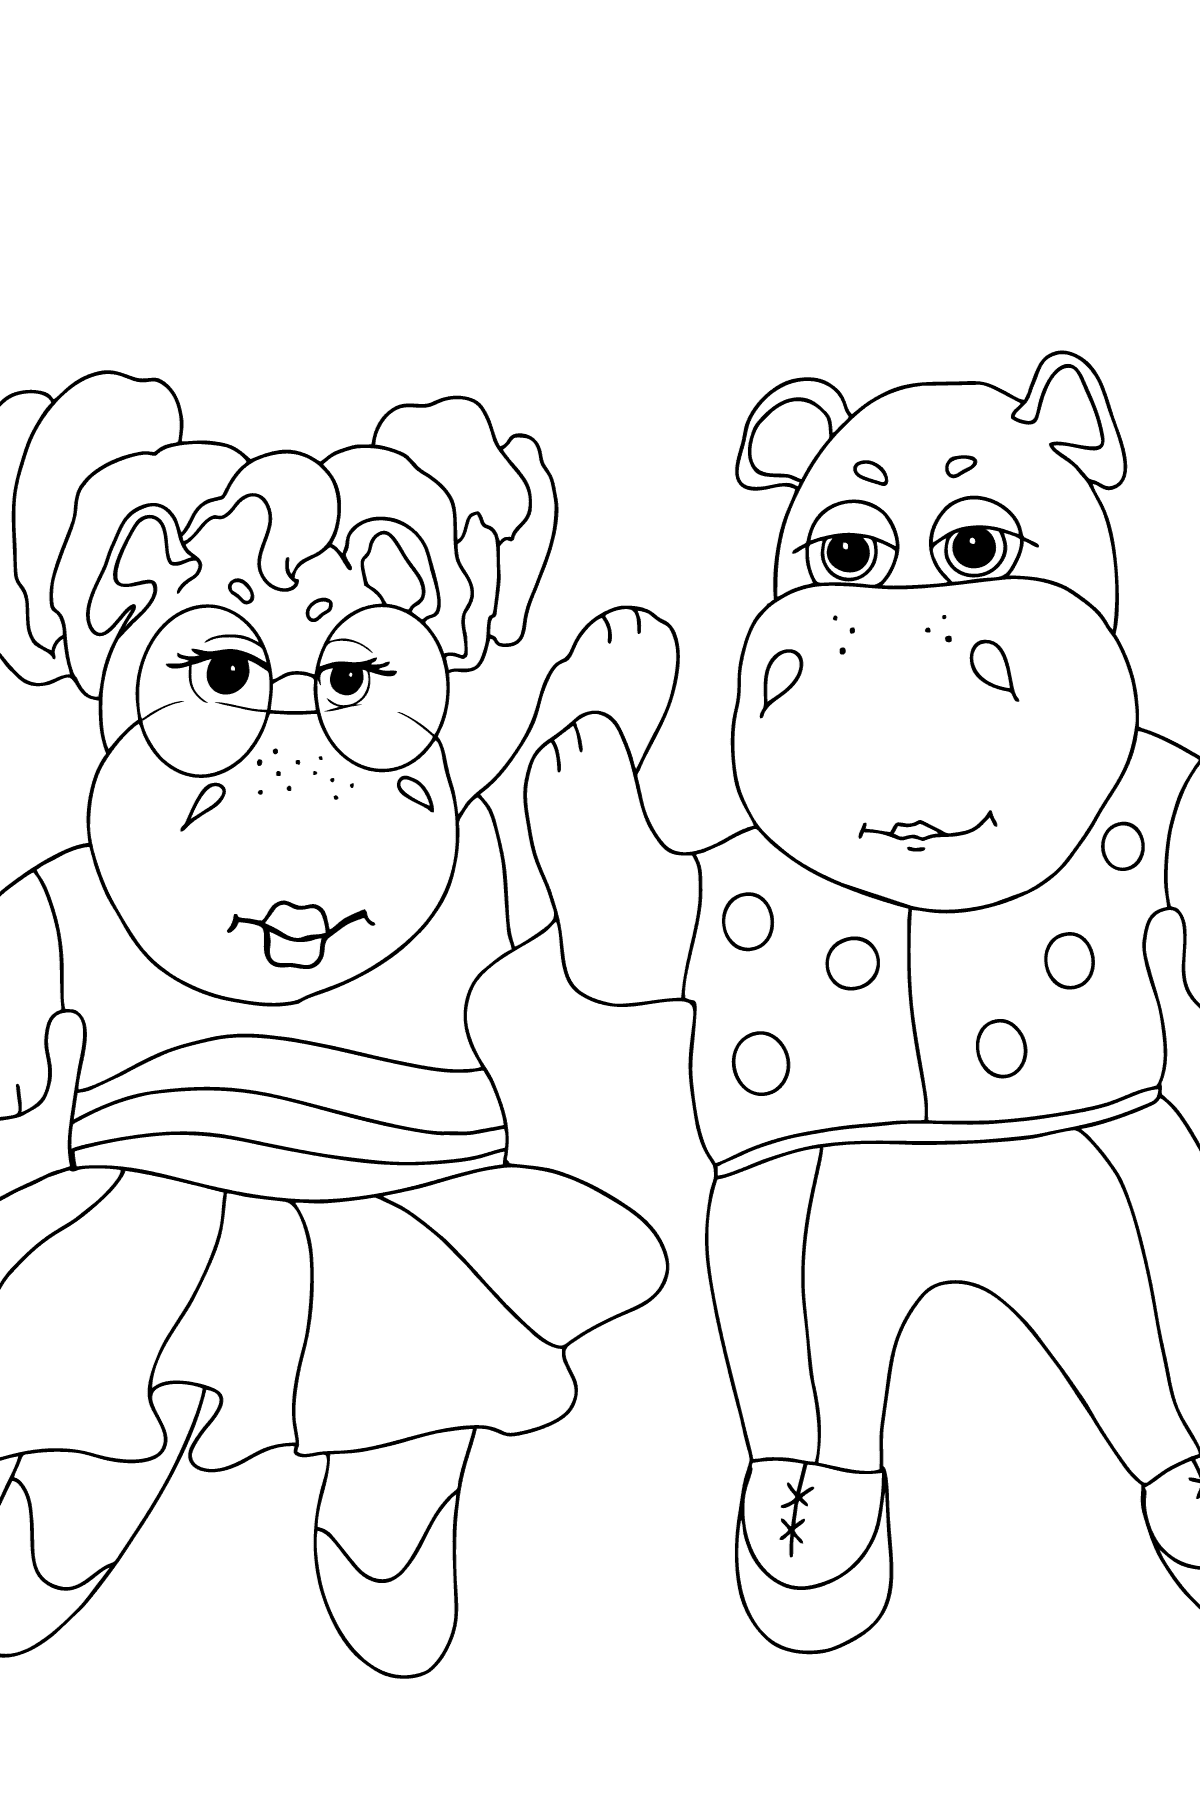 Prosta kolorystyka Śliczne Hipopotamy - Kolorowanki dla dzieci